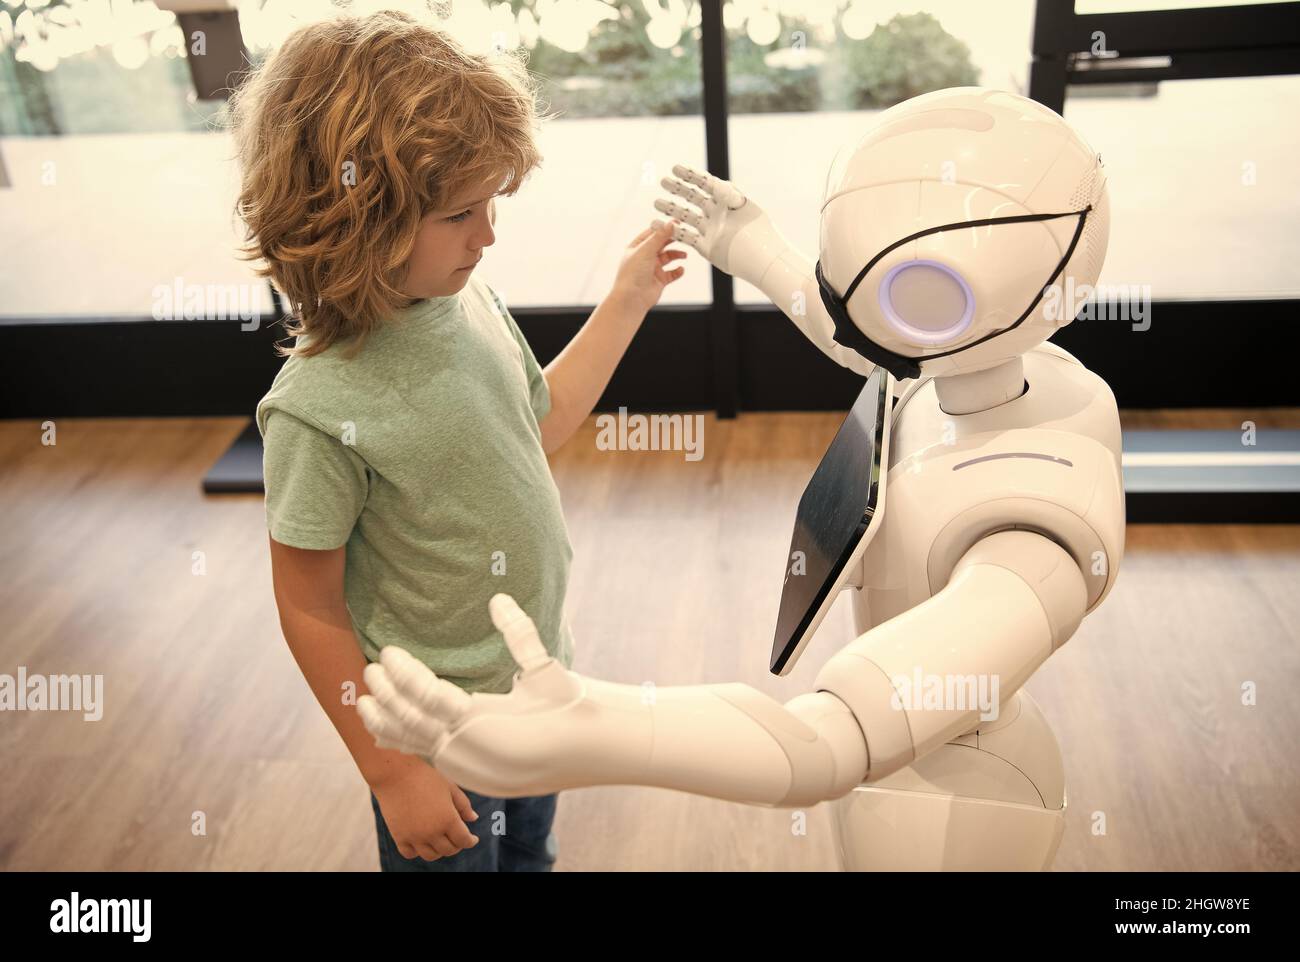 futuro pandemico robotico. il robot comunica con il bambino. automazione. tecnologia umanoide Foto Stock